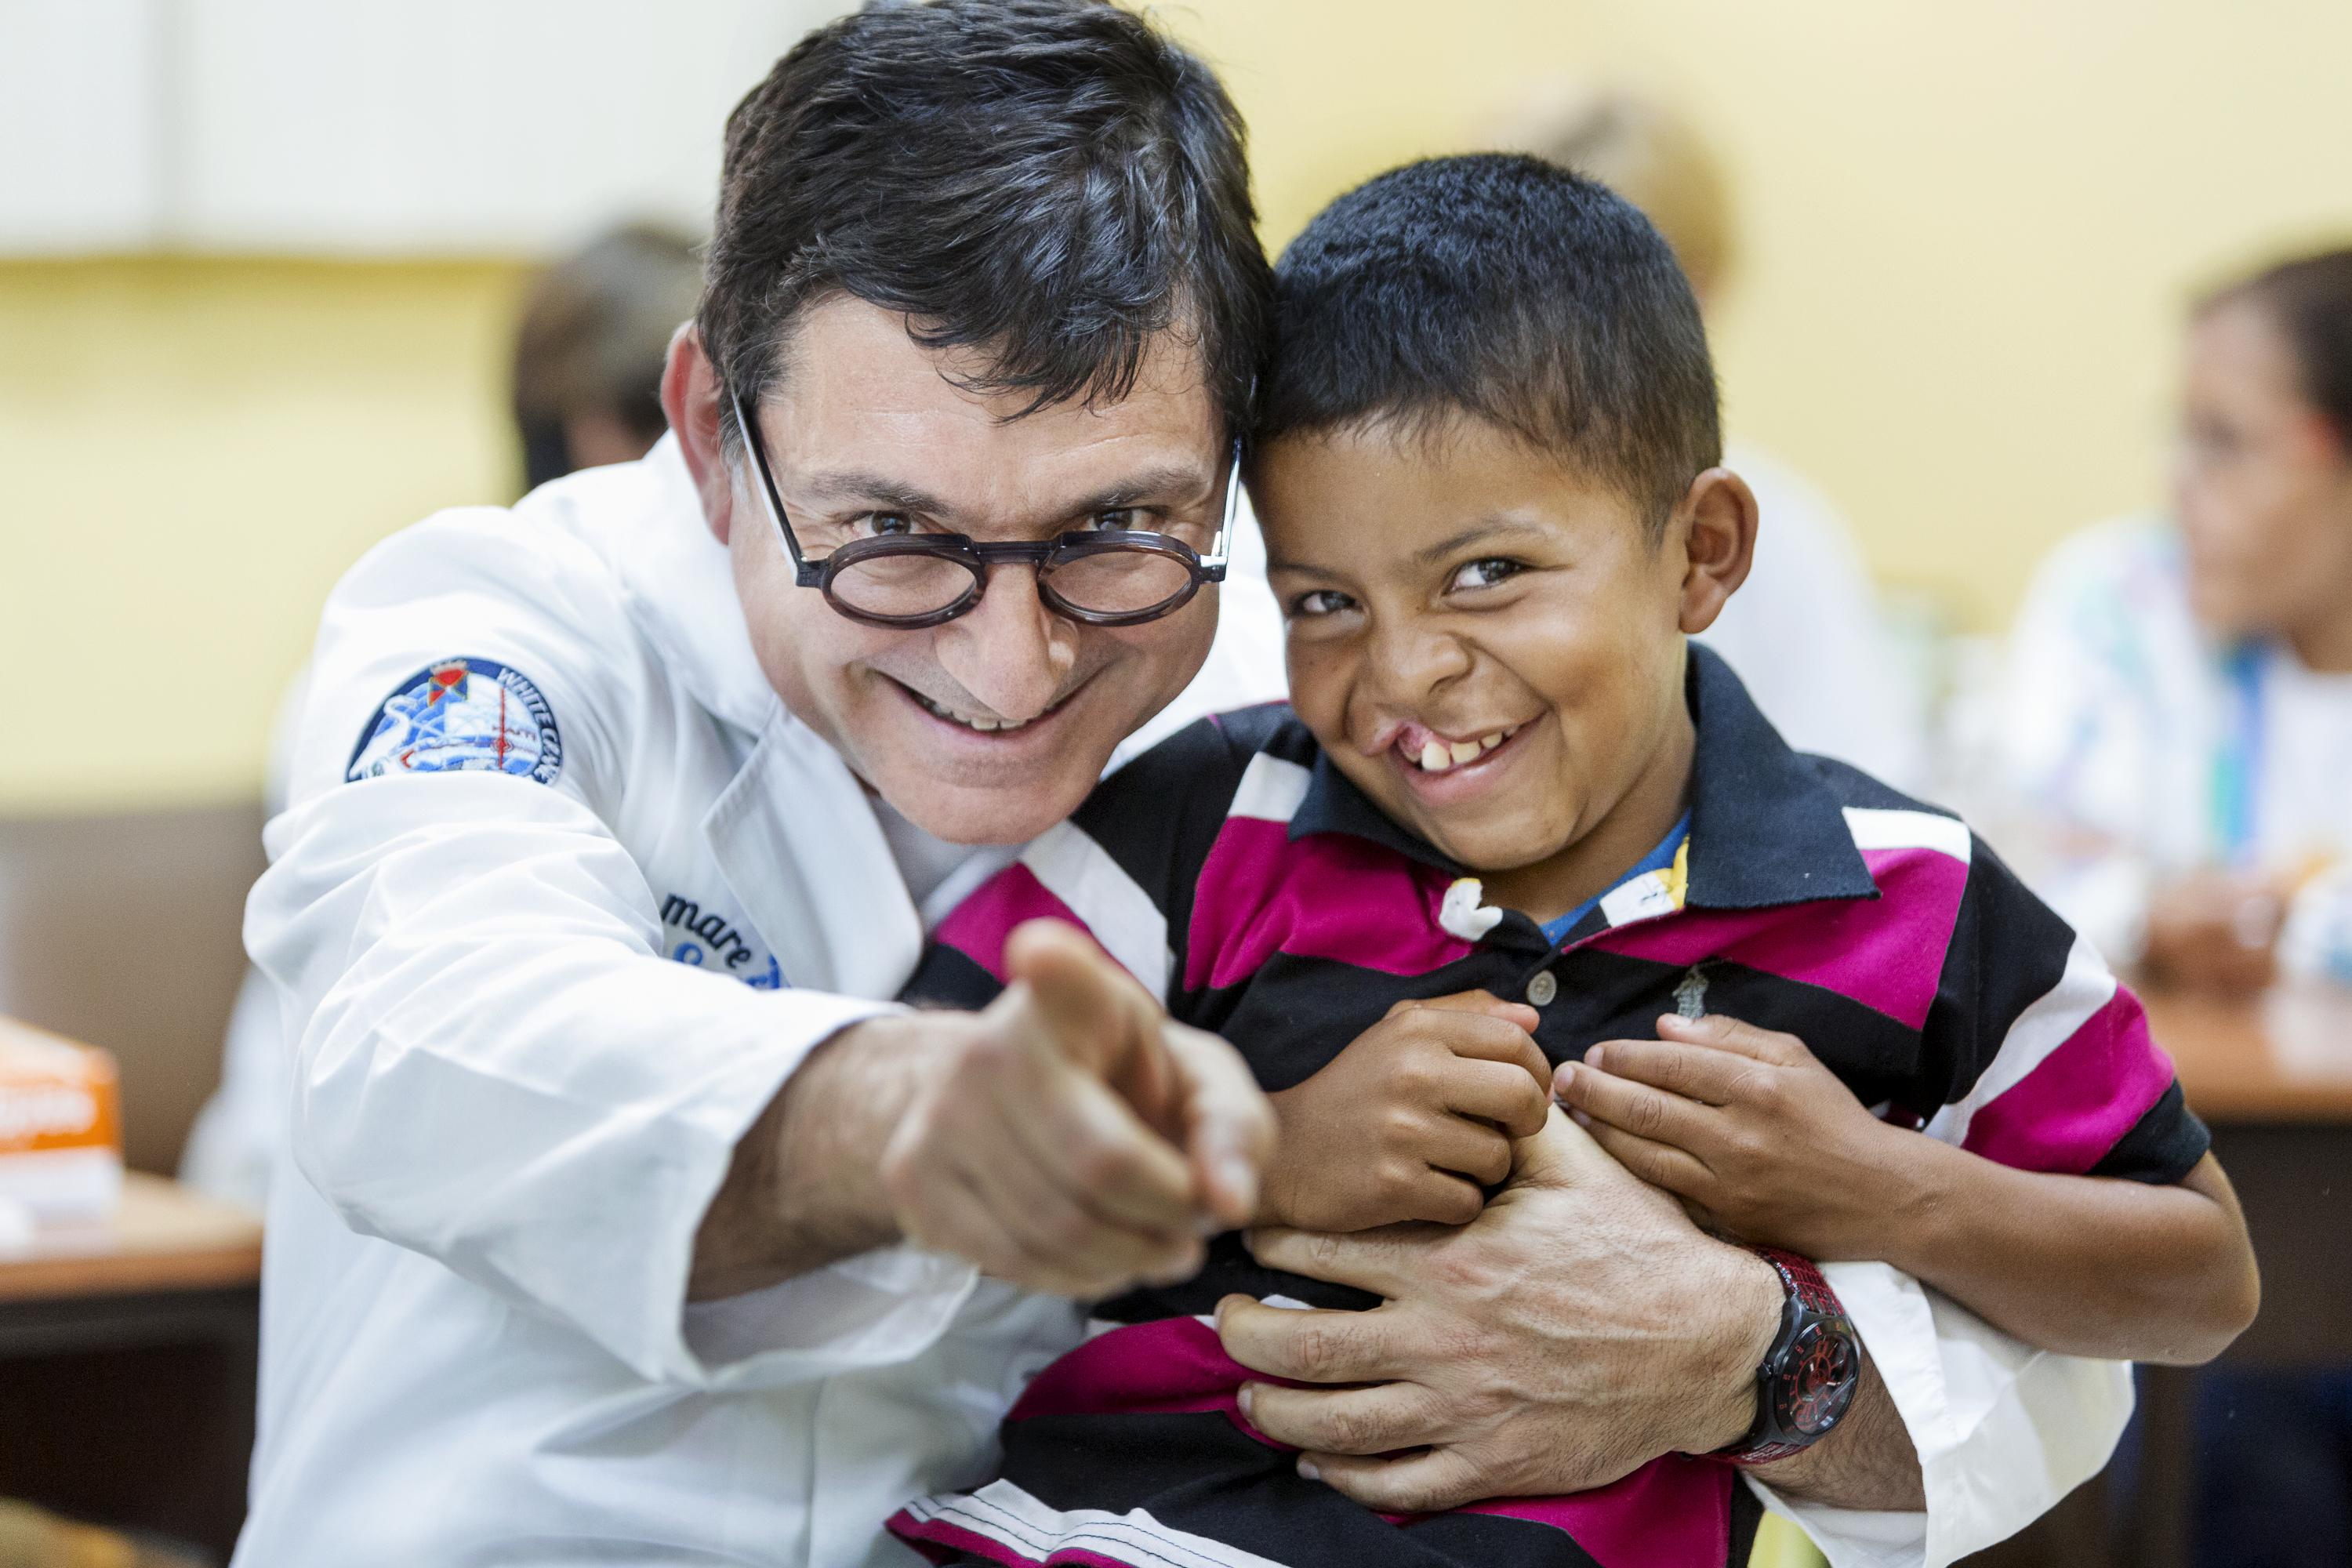 20 NUOVI SORRISI PER L’HONDURAS-Fondazione Operation Smile Italia Onlus